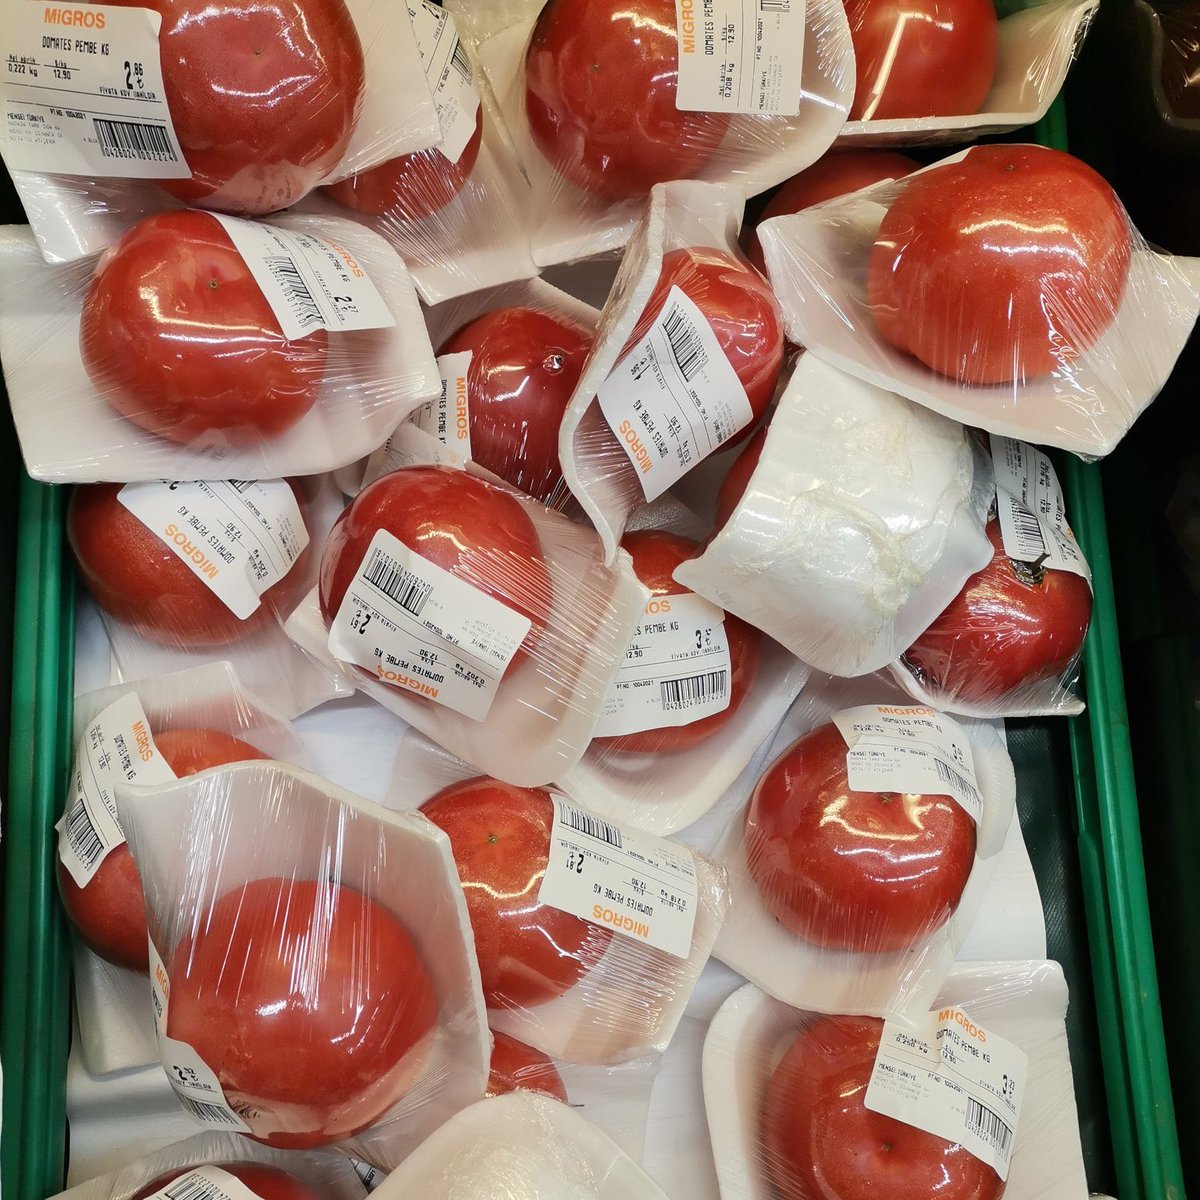 Migros marketlerde tane ile domates satışı sosyal medyada gündem oldu.